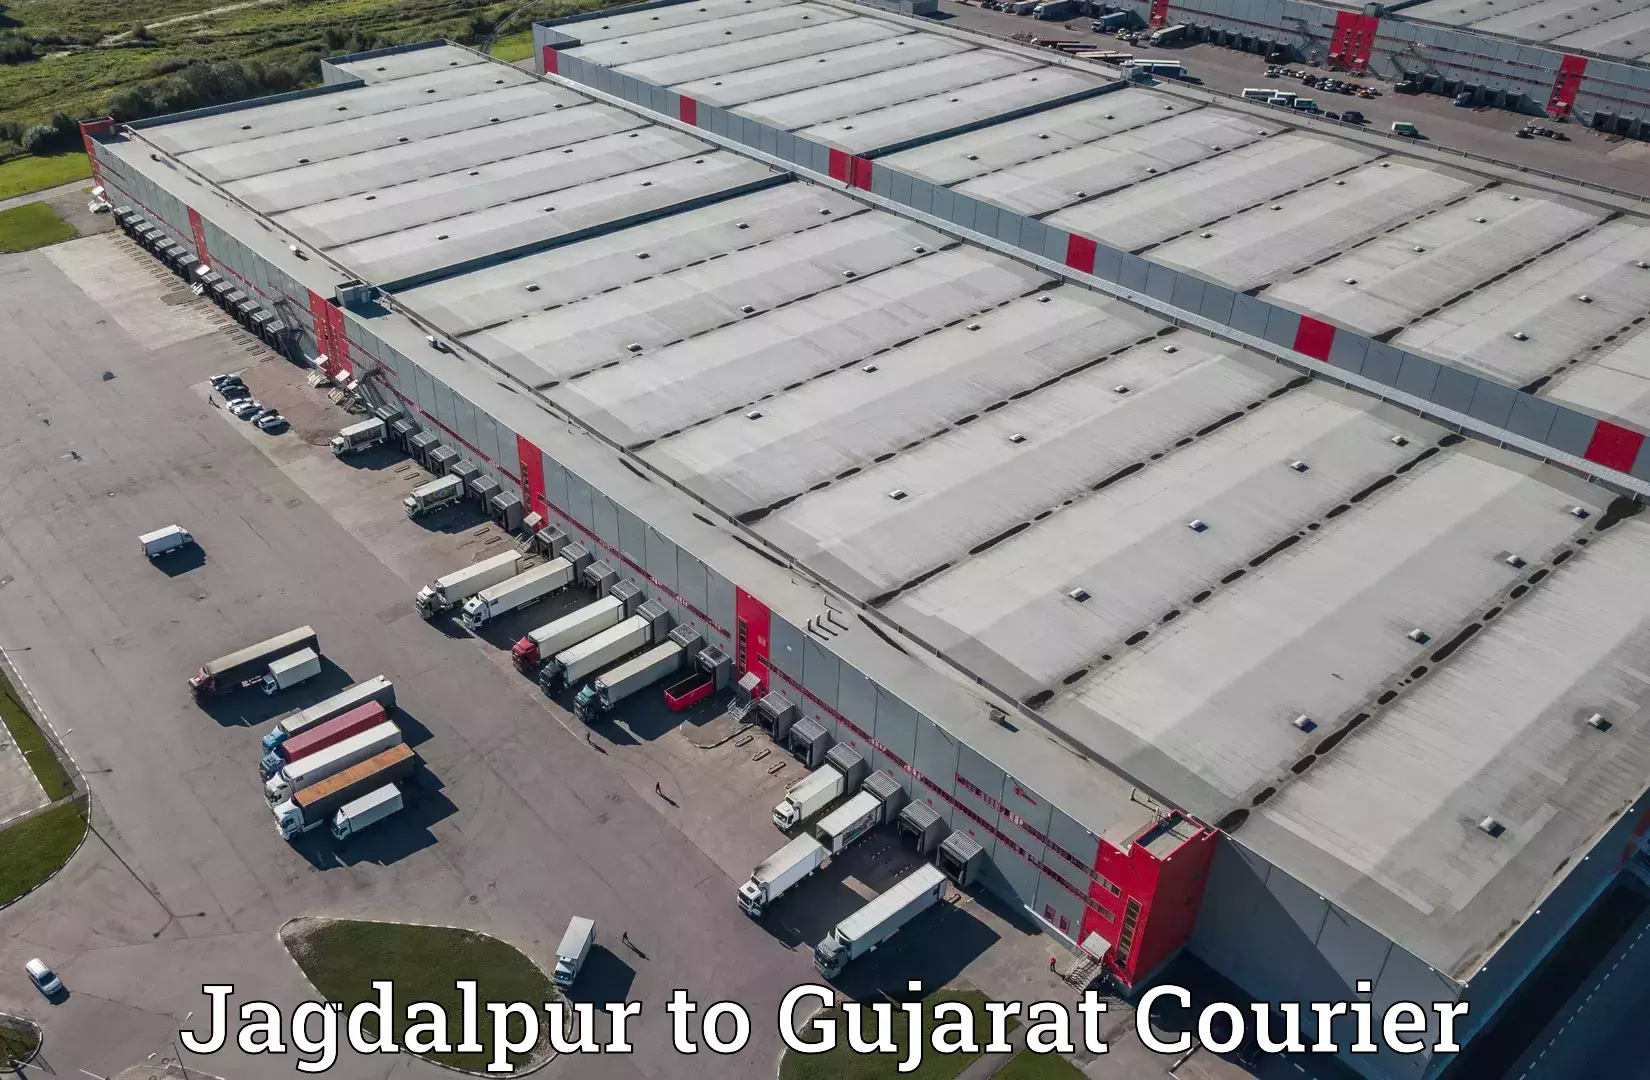 High-capacity shipping options Jagdalpur to Ahwa